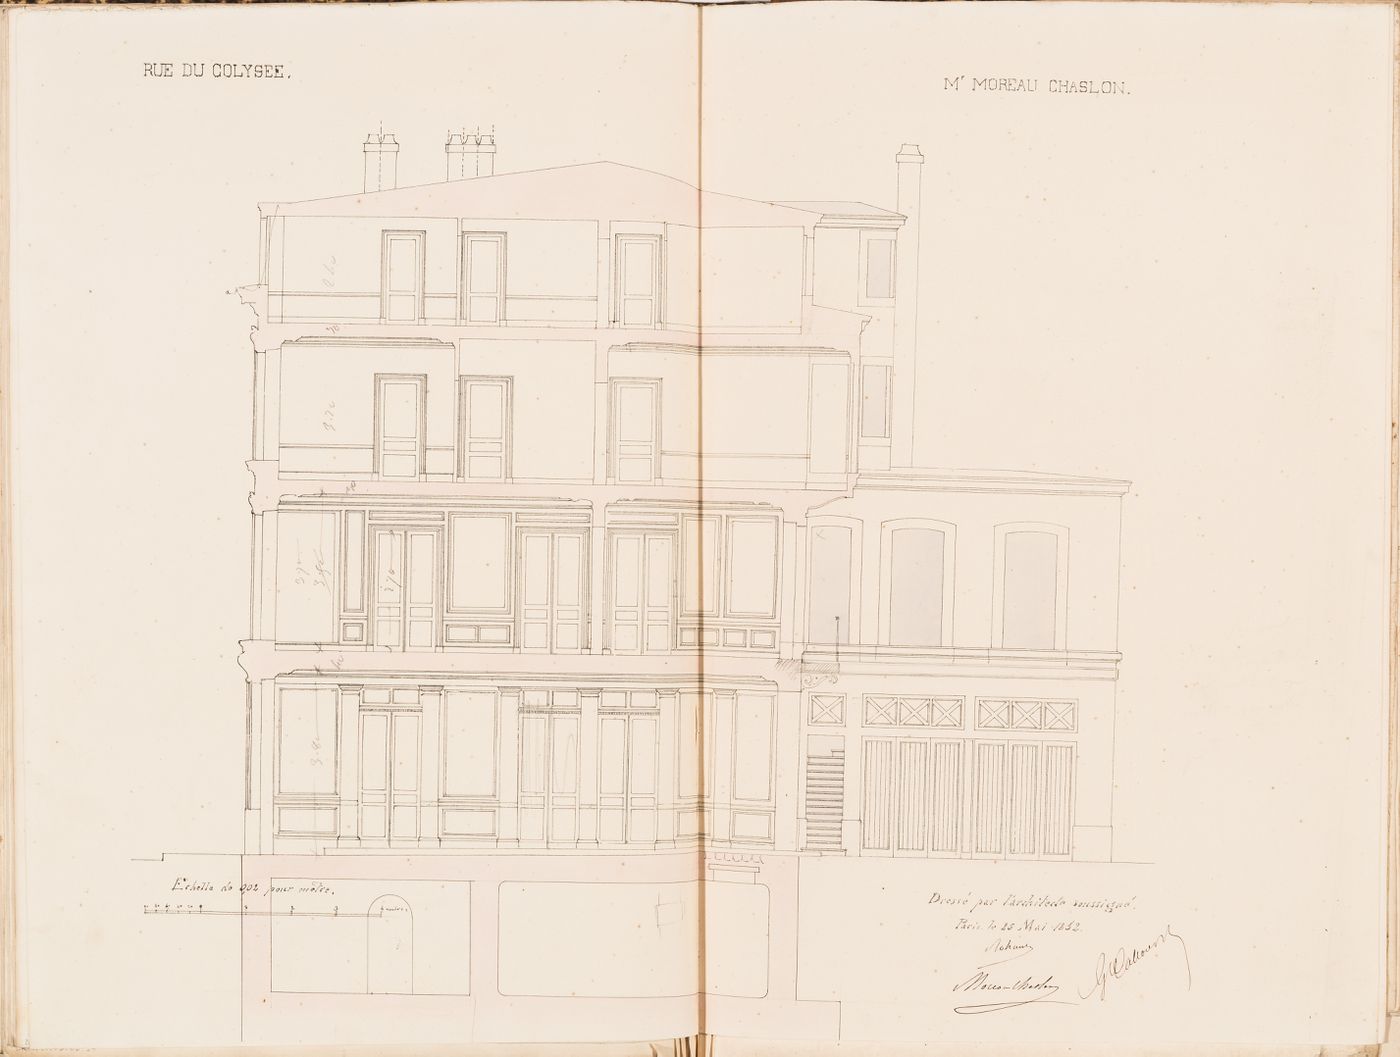 Contract drawing for a house for Monsieur Moreau Chaslon, rue du Colysée, Paris: Longitudinal section